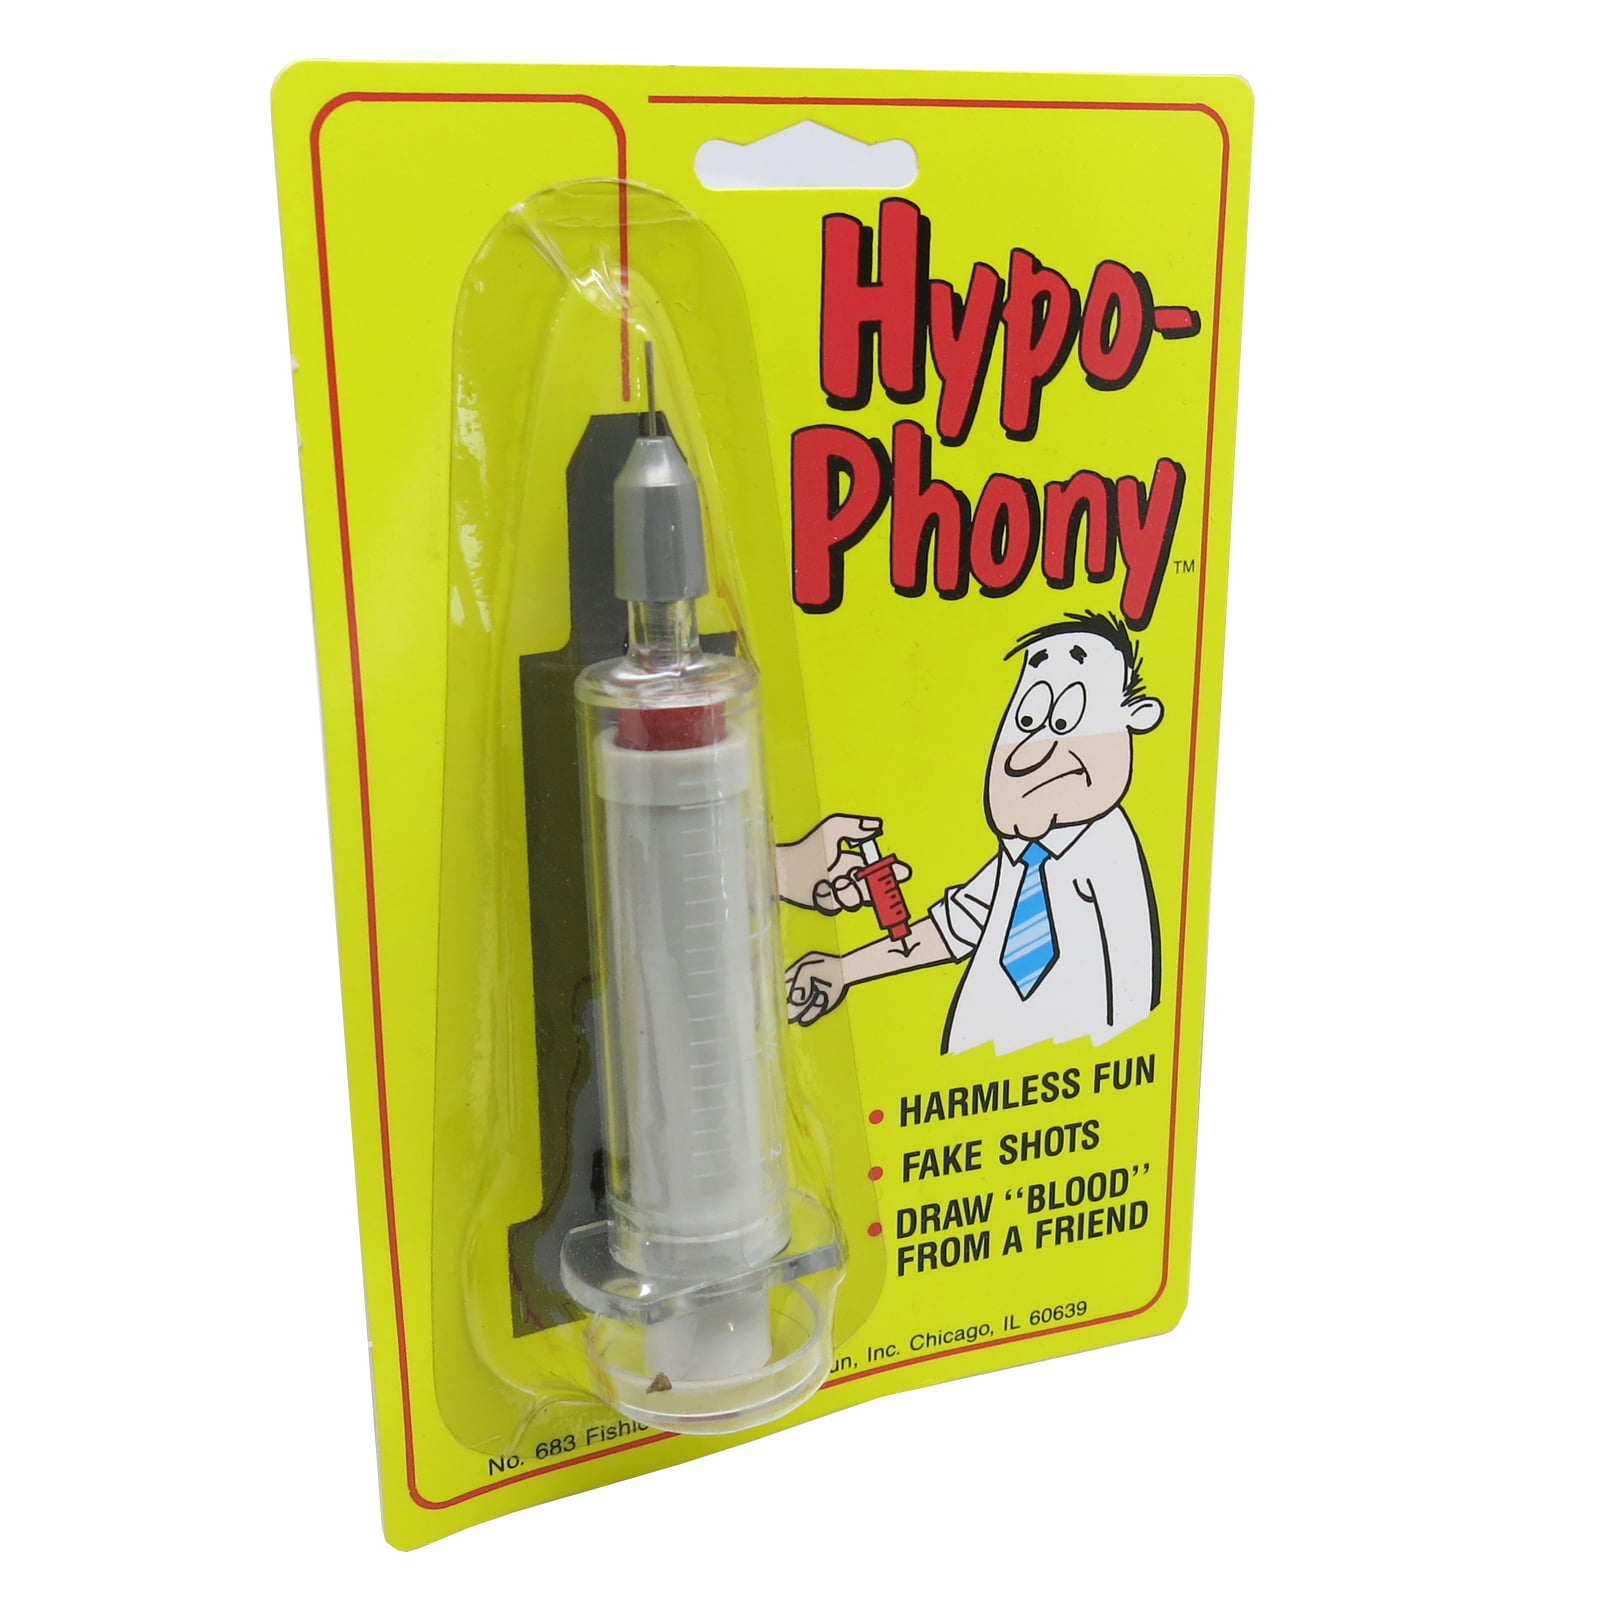 Hypo-phony - Fake Hypodermic Needle Is Harmless Fun - www.semashow.com - www.semashow.com